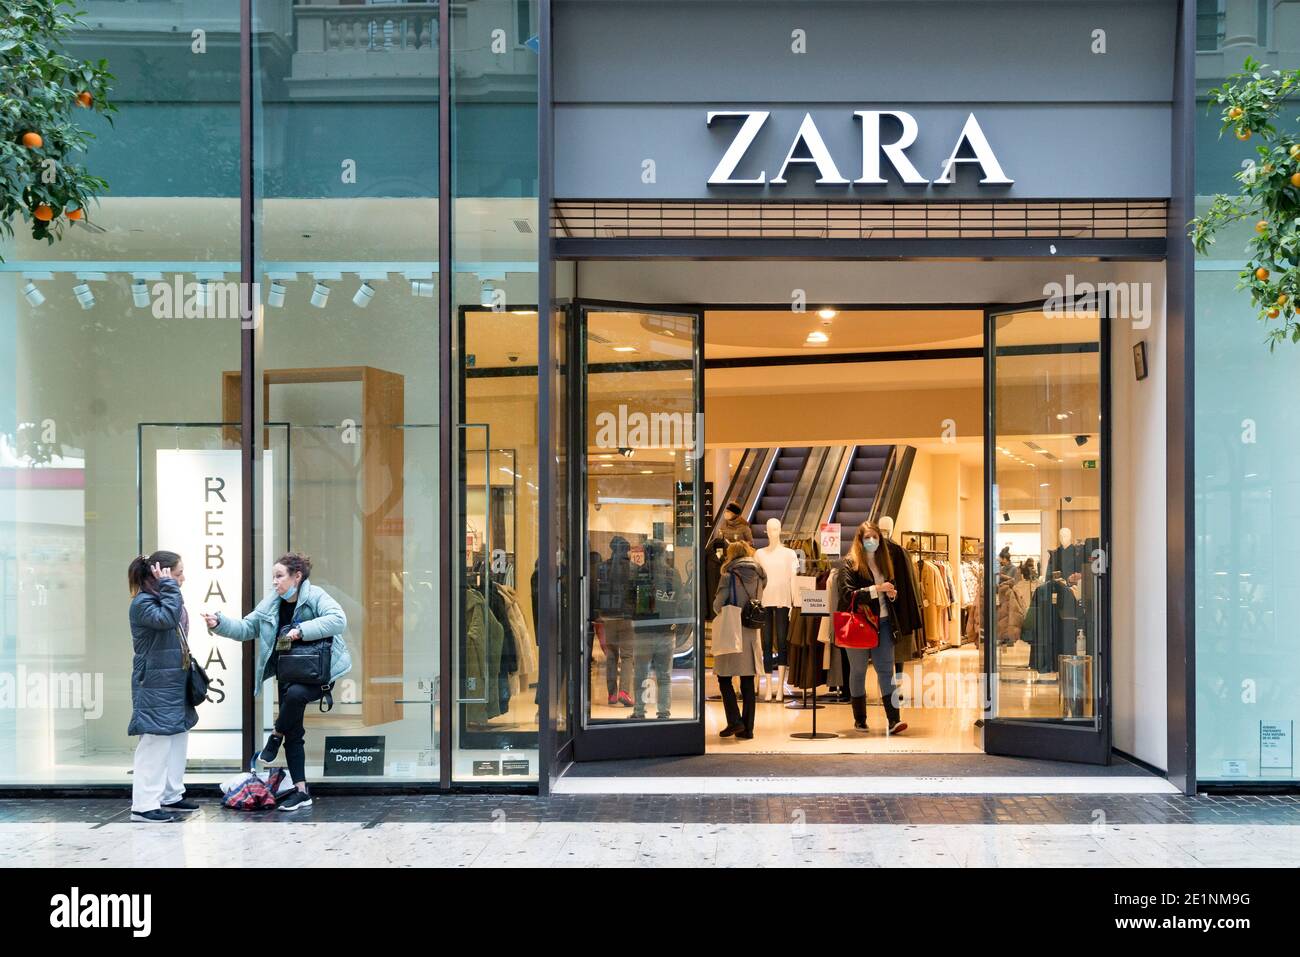 Las mujeres esperan delante de la puerta de la tienda Zara durante las  ventas de invierno.en las últimas semanas de Navidad, los casos de Covid19  en Valencia han aumentado, lo que ha